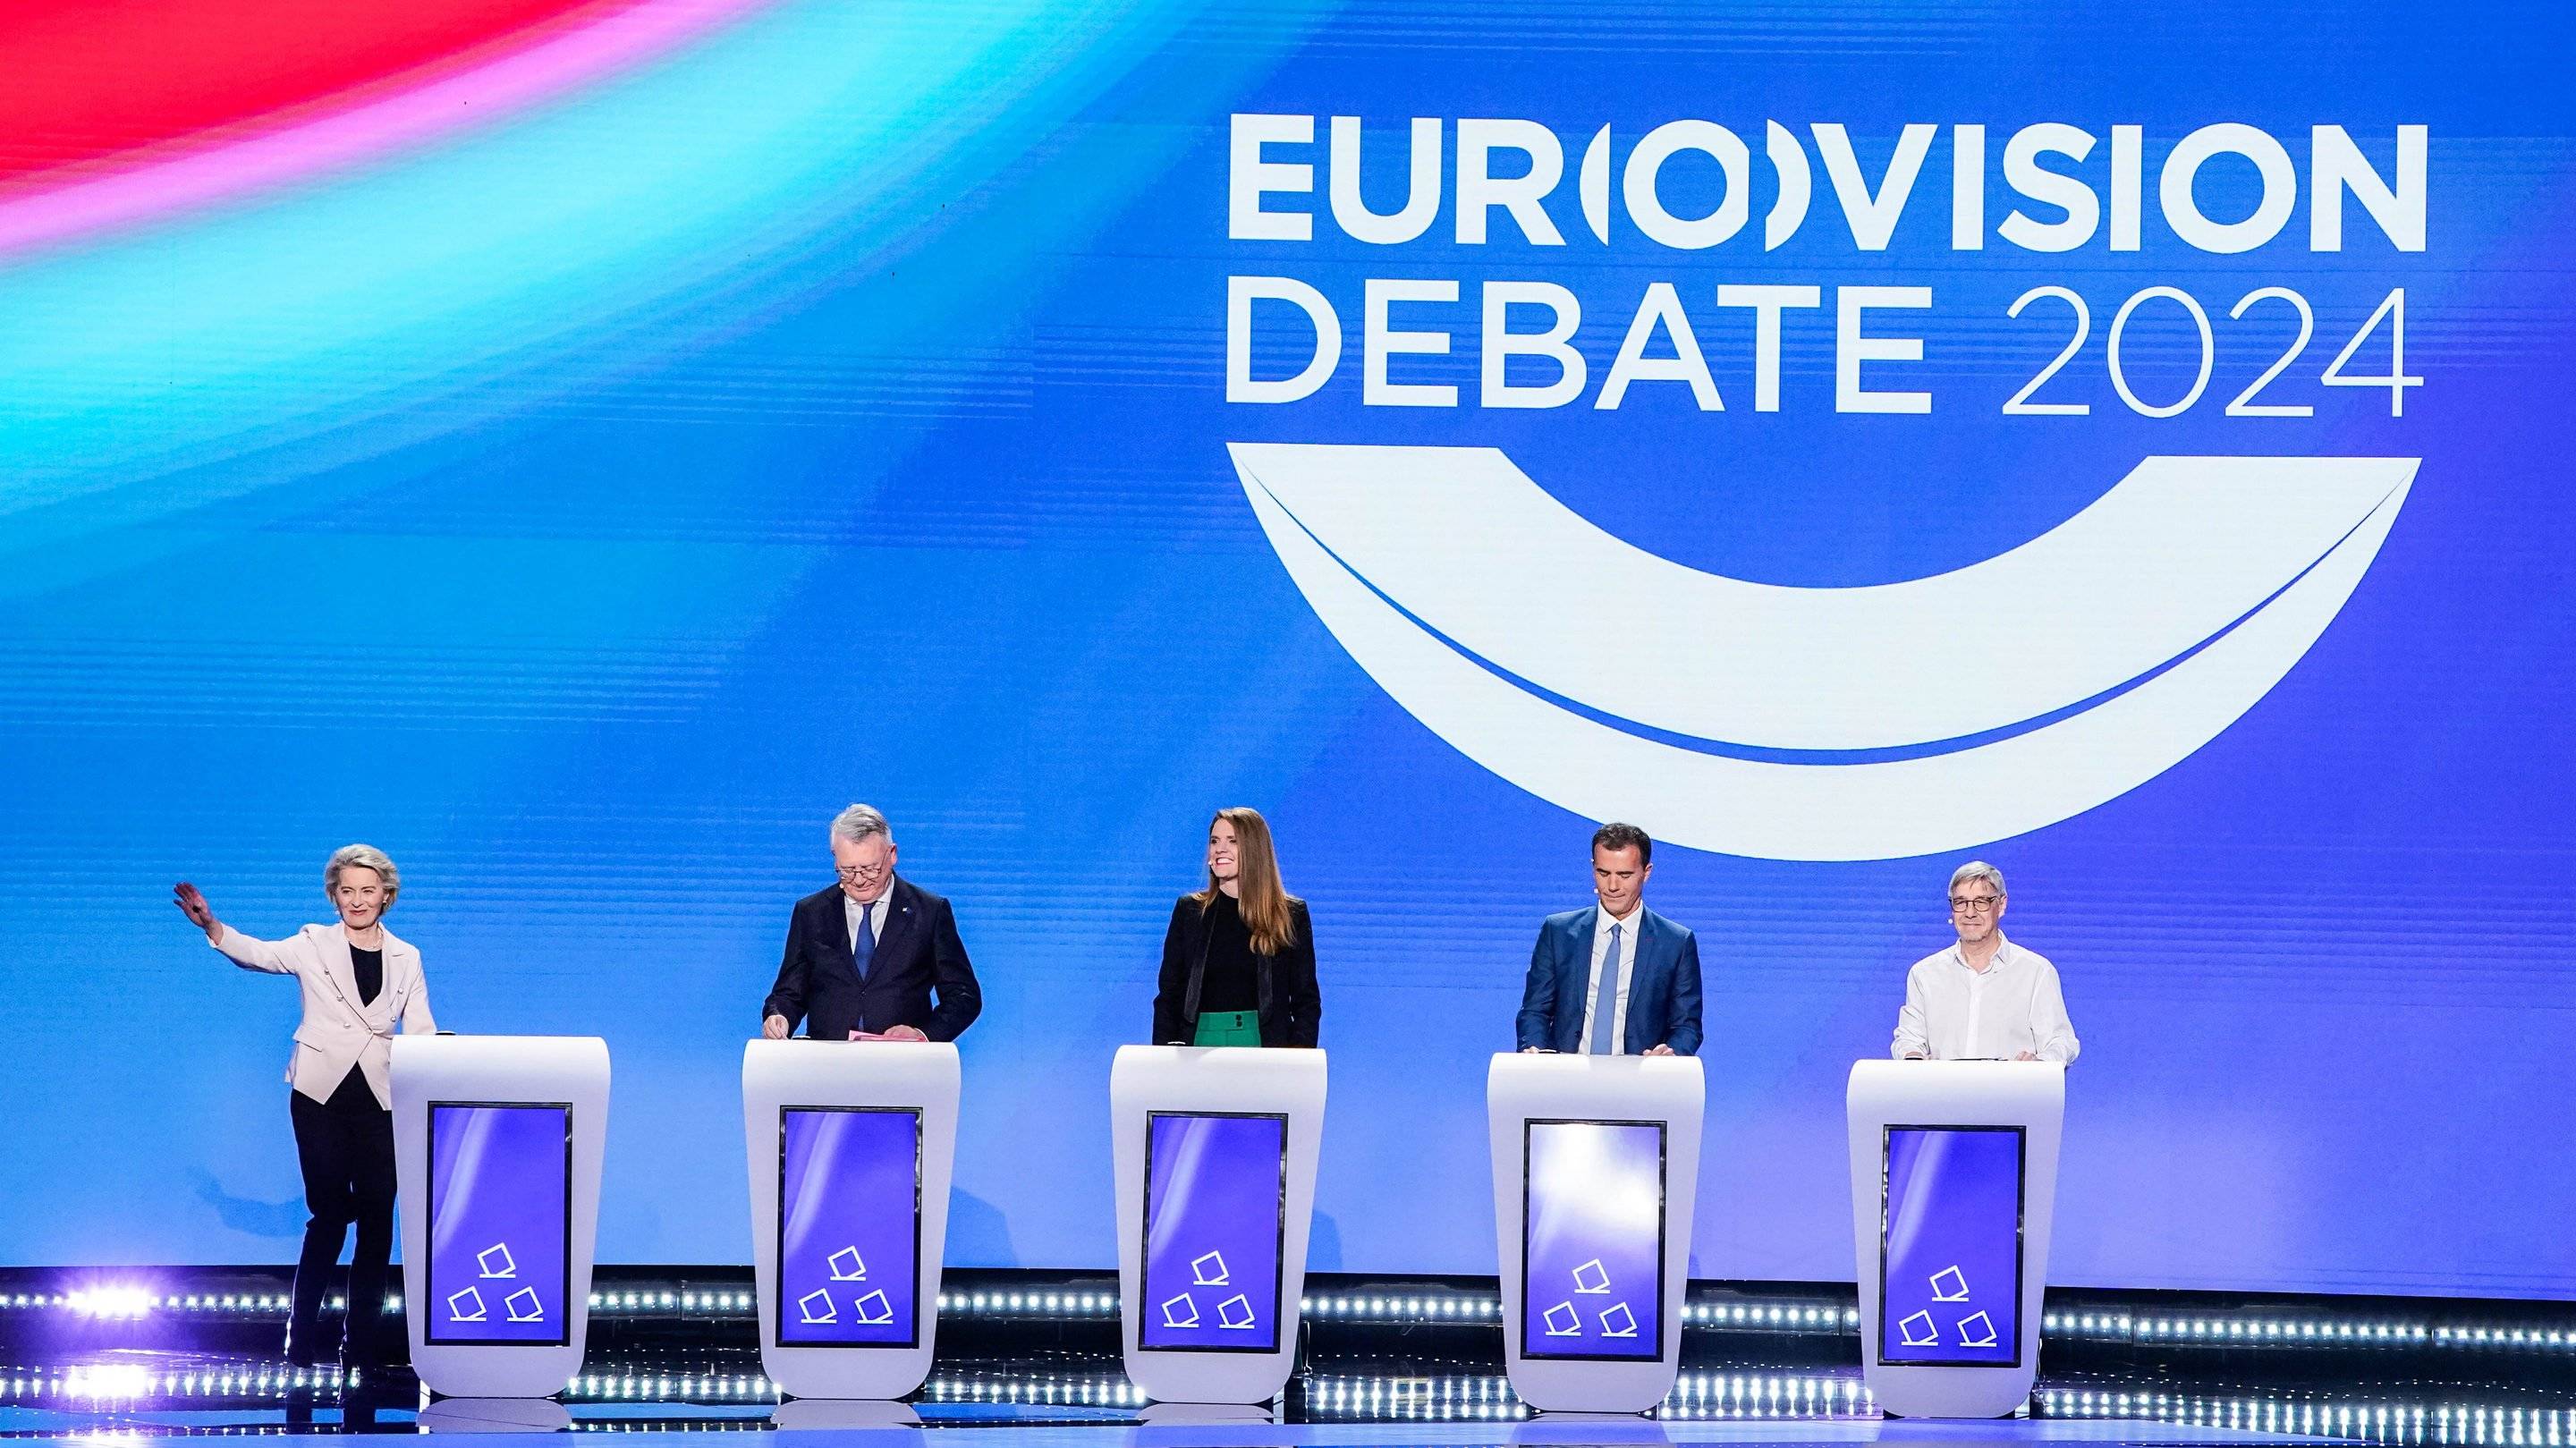 Pięć osób - dwie kobiety i trzech mężczyzn - stoi za mównicami na scenie z wielkim napisem Eurovision Debate.